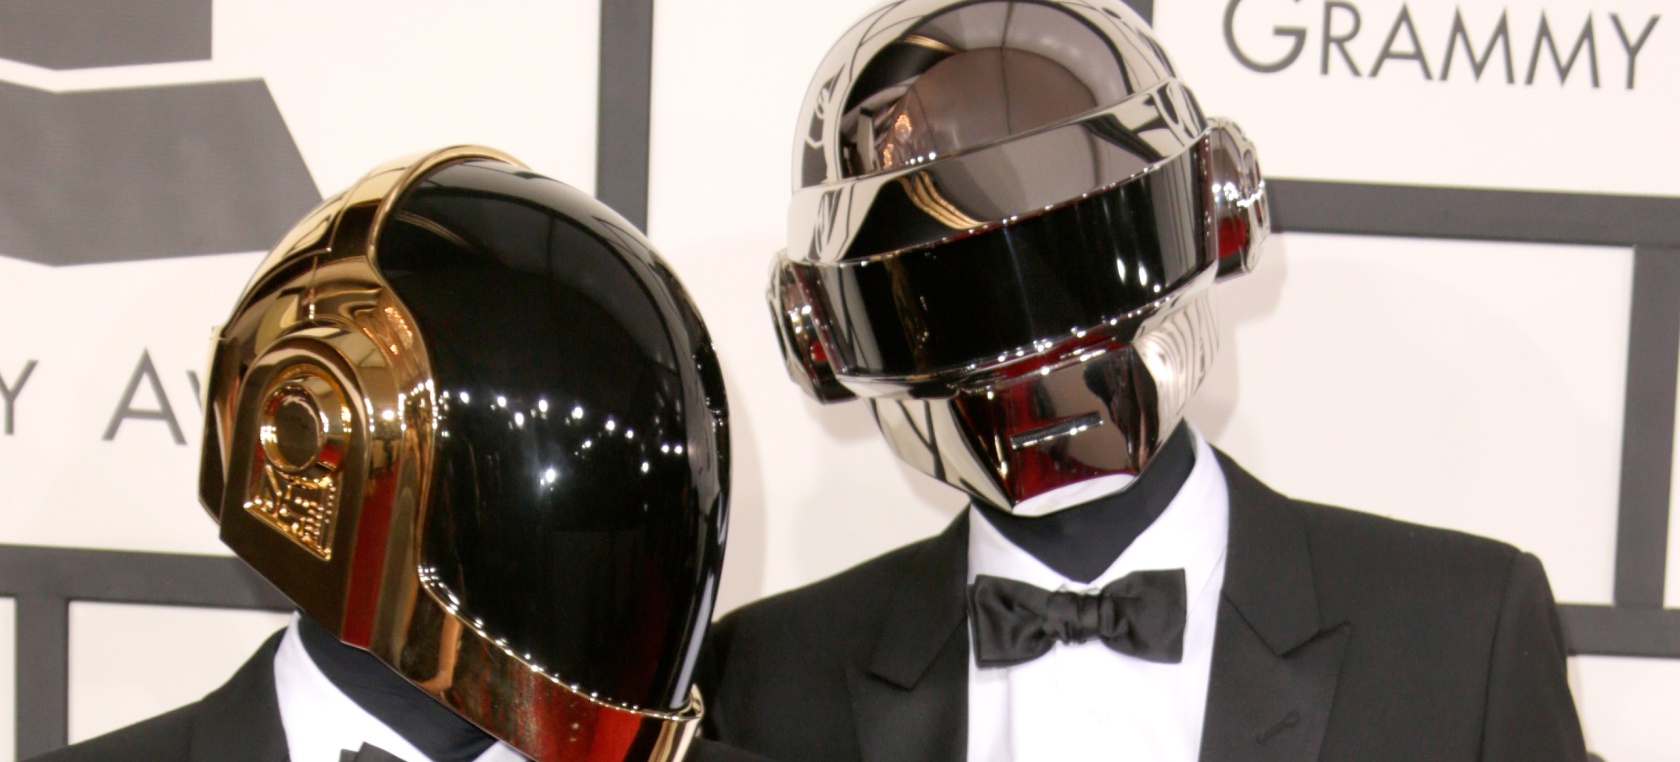 David Guetta, Don Diablo y Steve Aoki reaccionan a la separación de Daft Punk